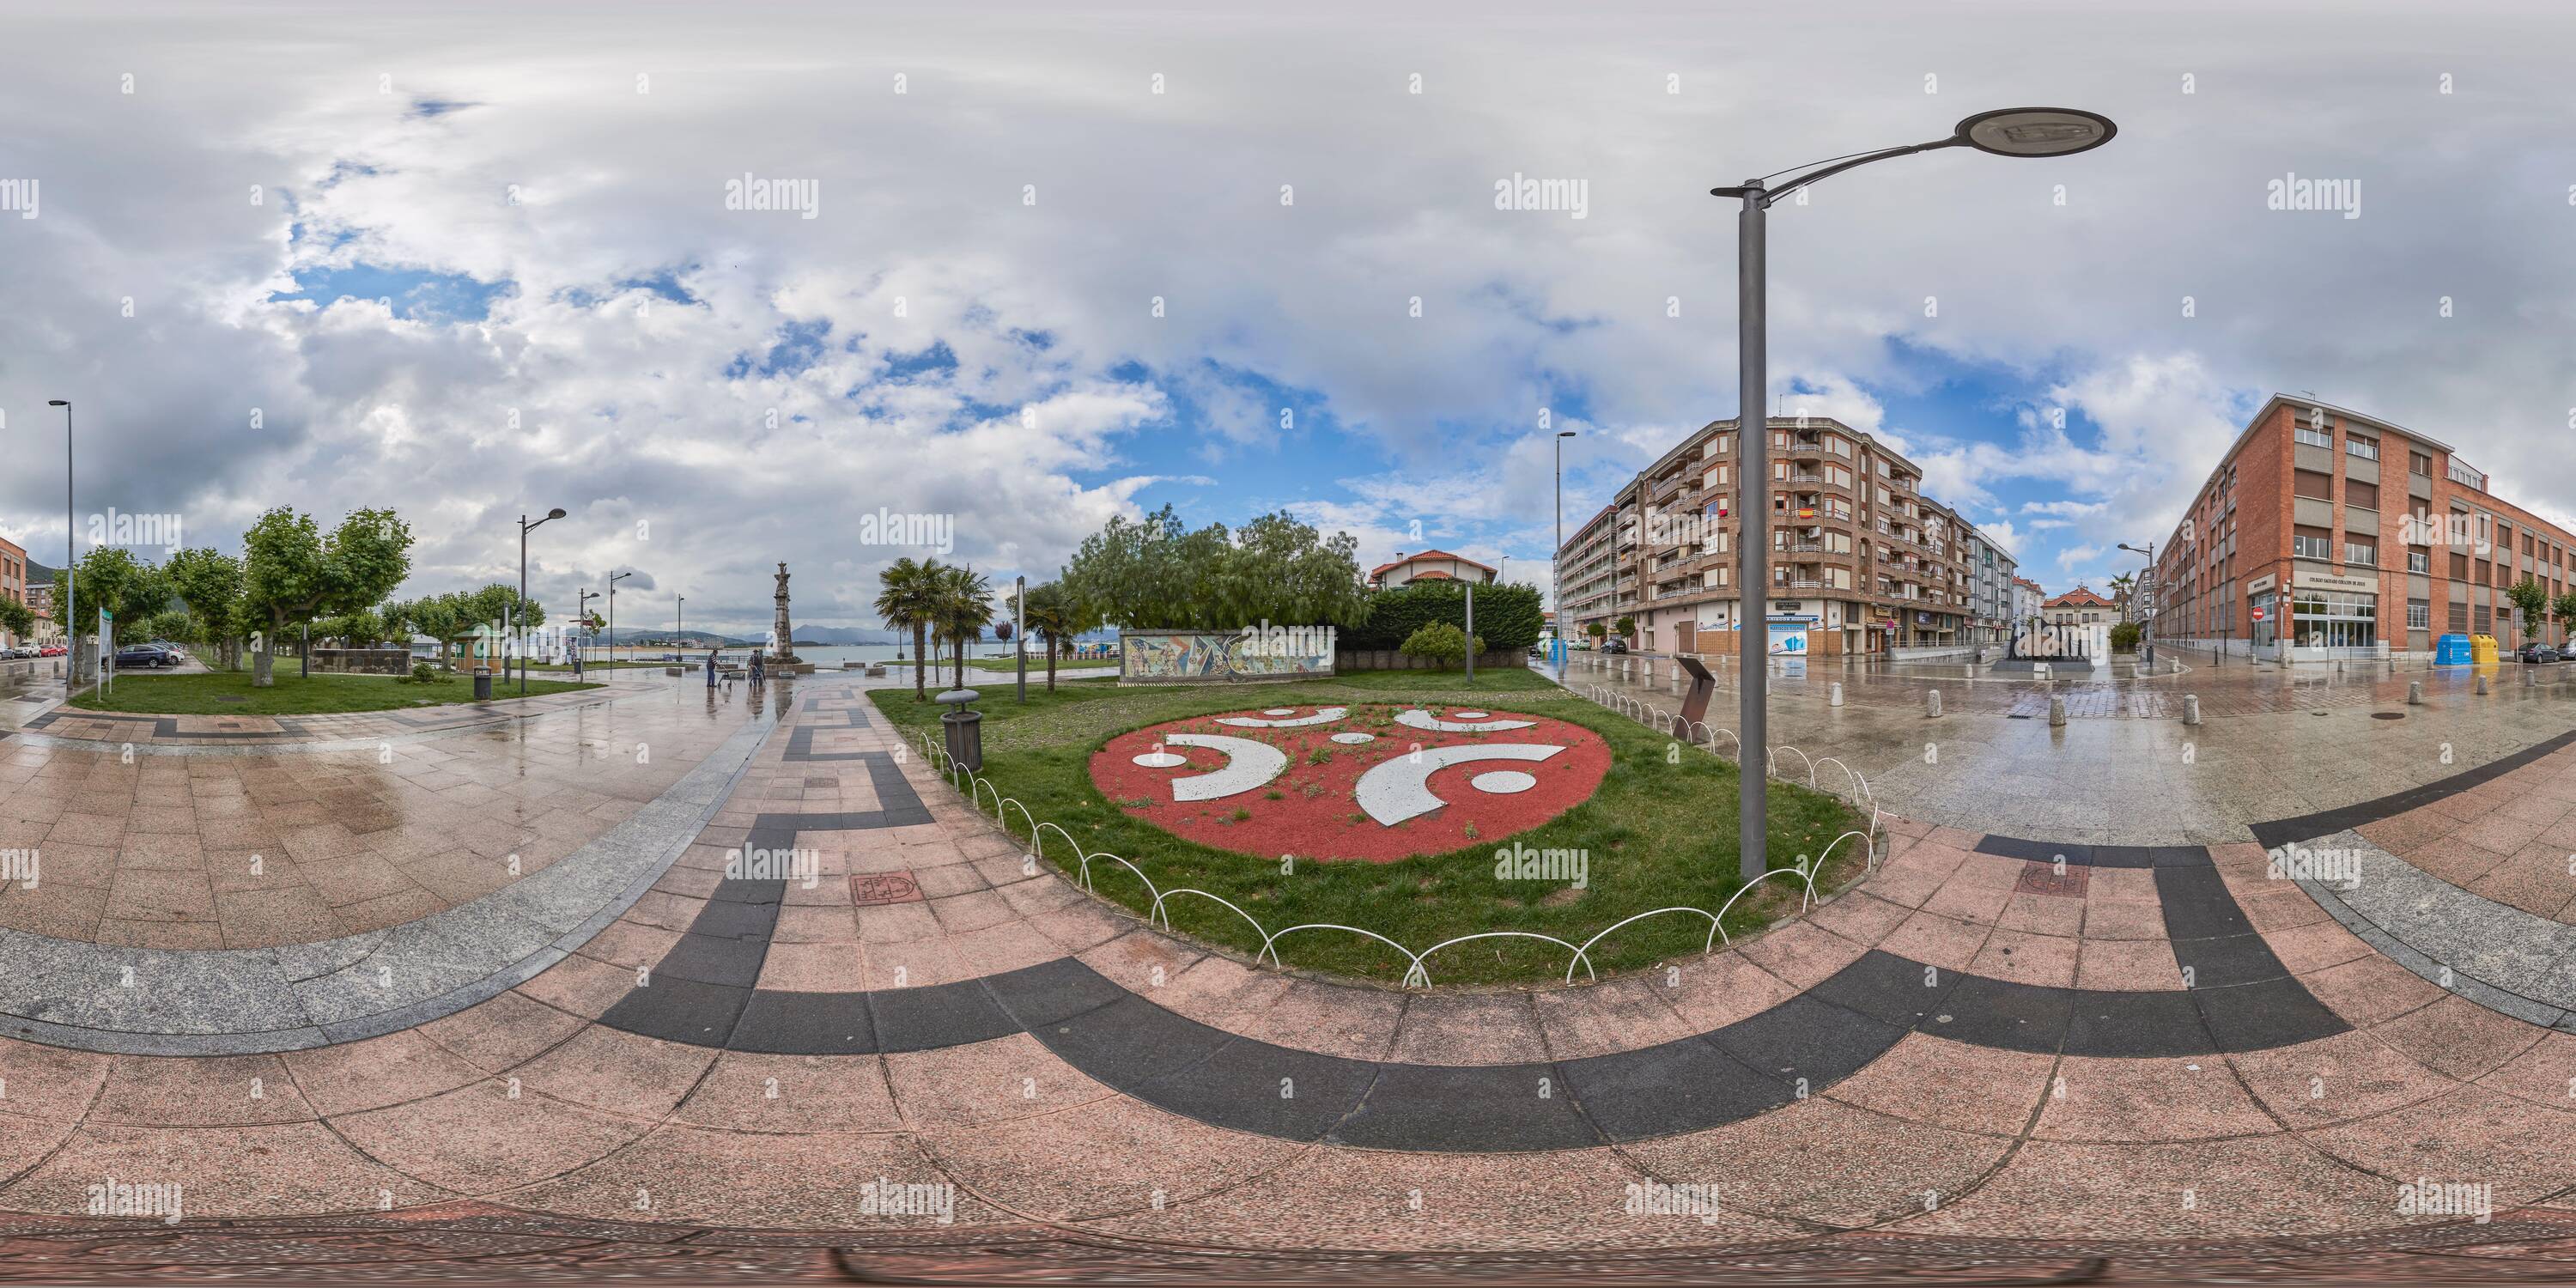 Vista panorámica en 360 grados de Panorámica de 360 grados: Monumento al Carnaval en la Plaza de la Corcordia y Juan de la Cosa en el paseo marítimo de Santona, Cantabria, España, Europa.